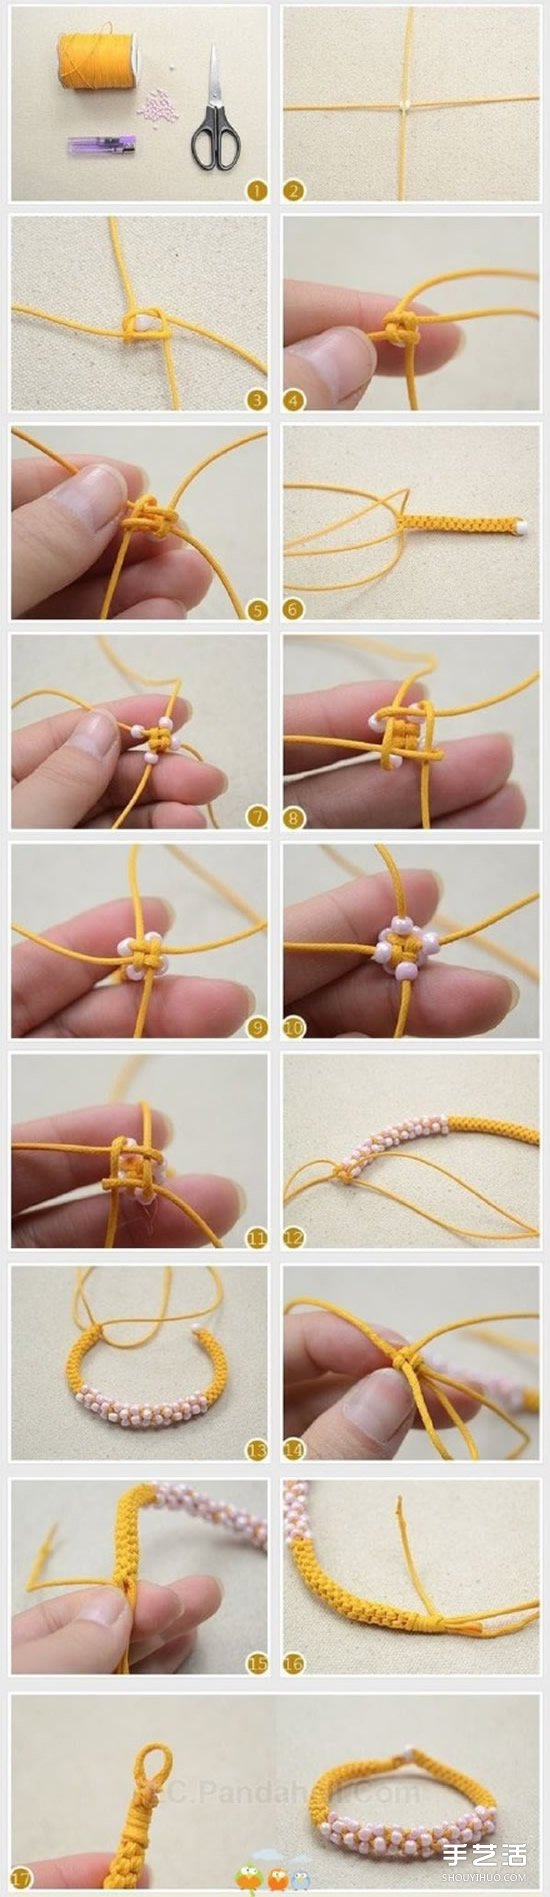 可爱串珠手链的编法图解 装饰串珠的手链编织